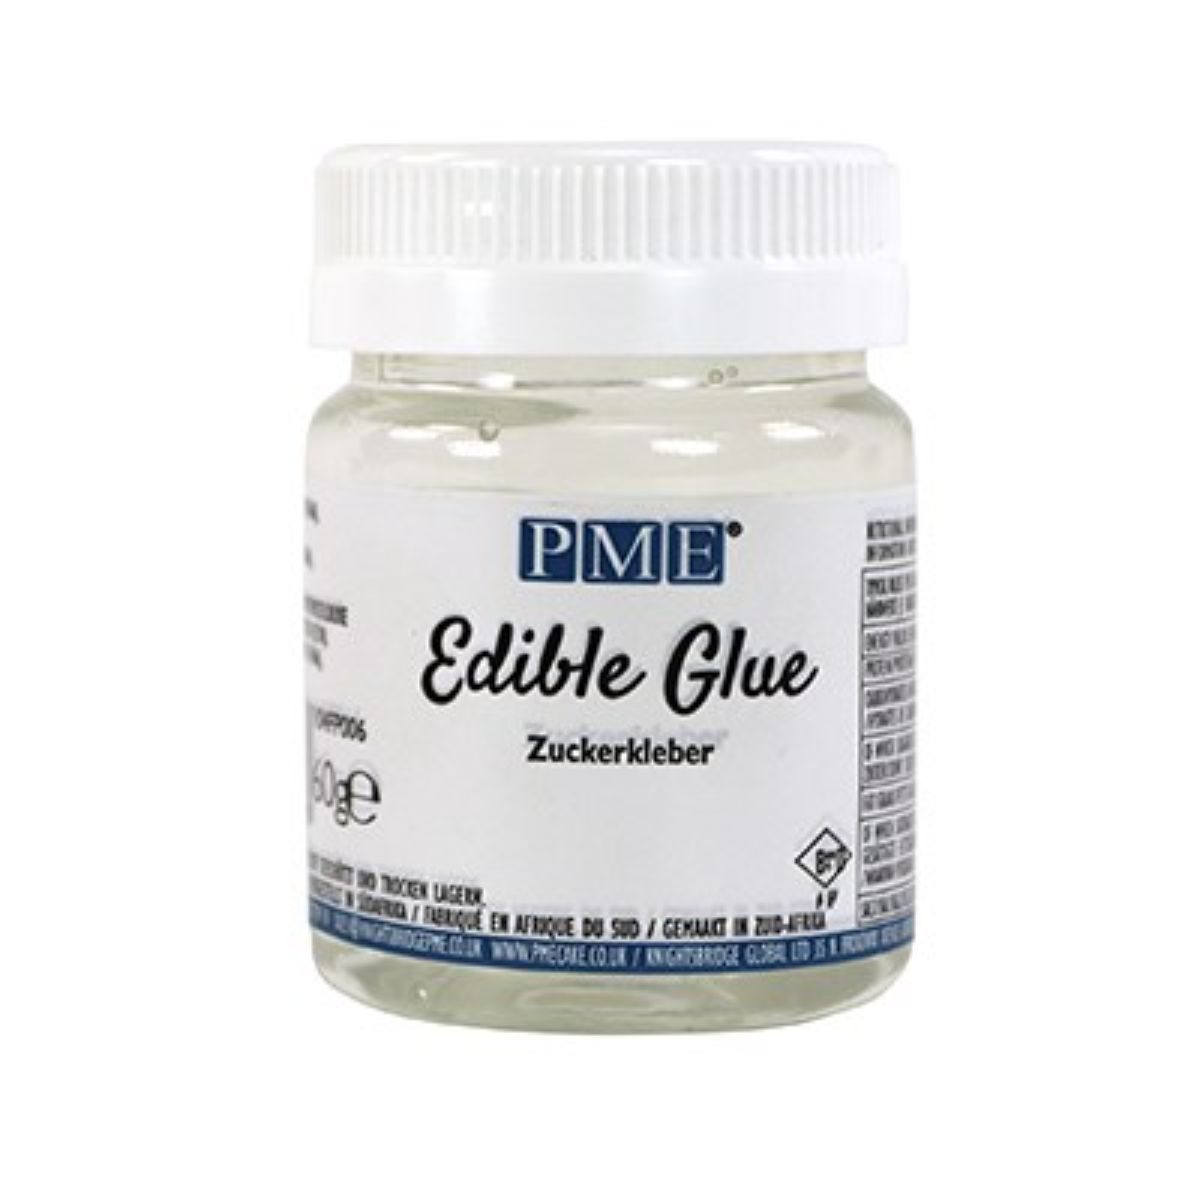 Edible Glue For Cake, 2 OZ Of Edible Glue